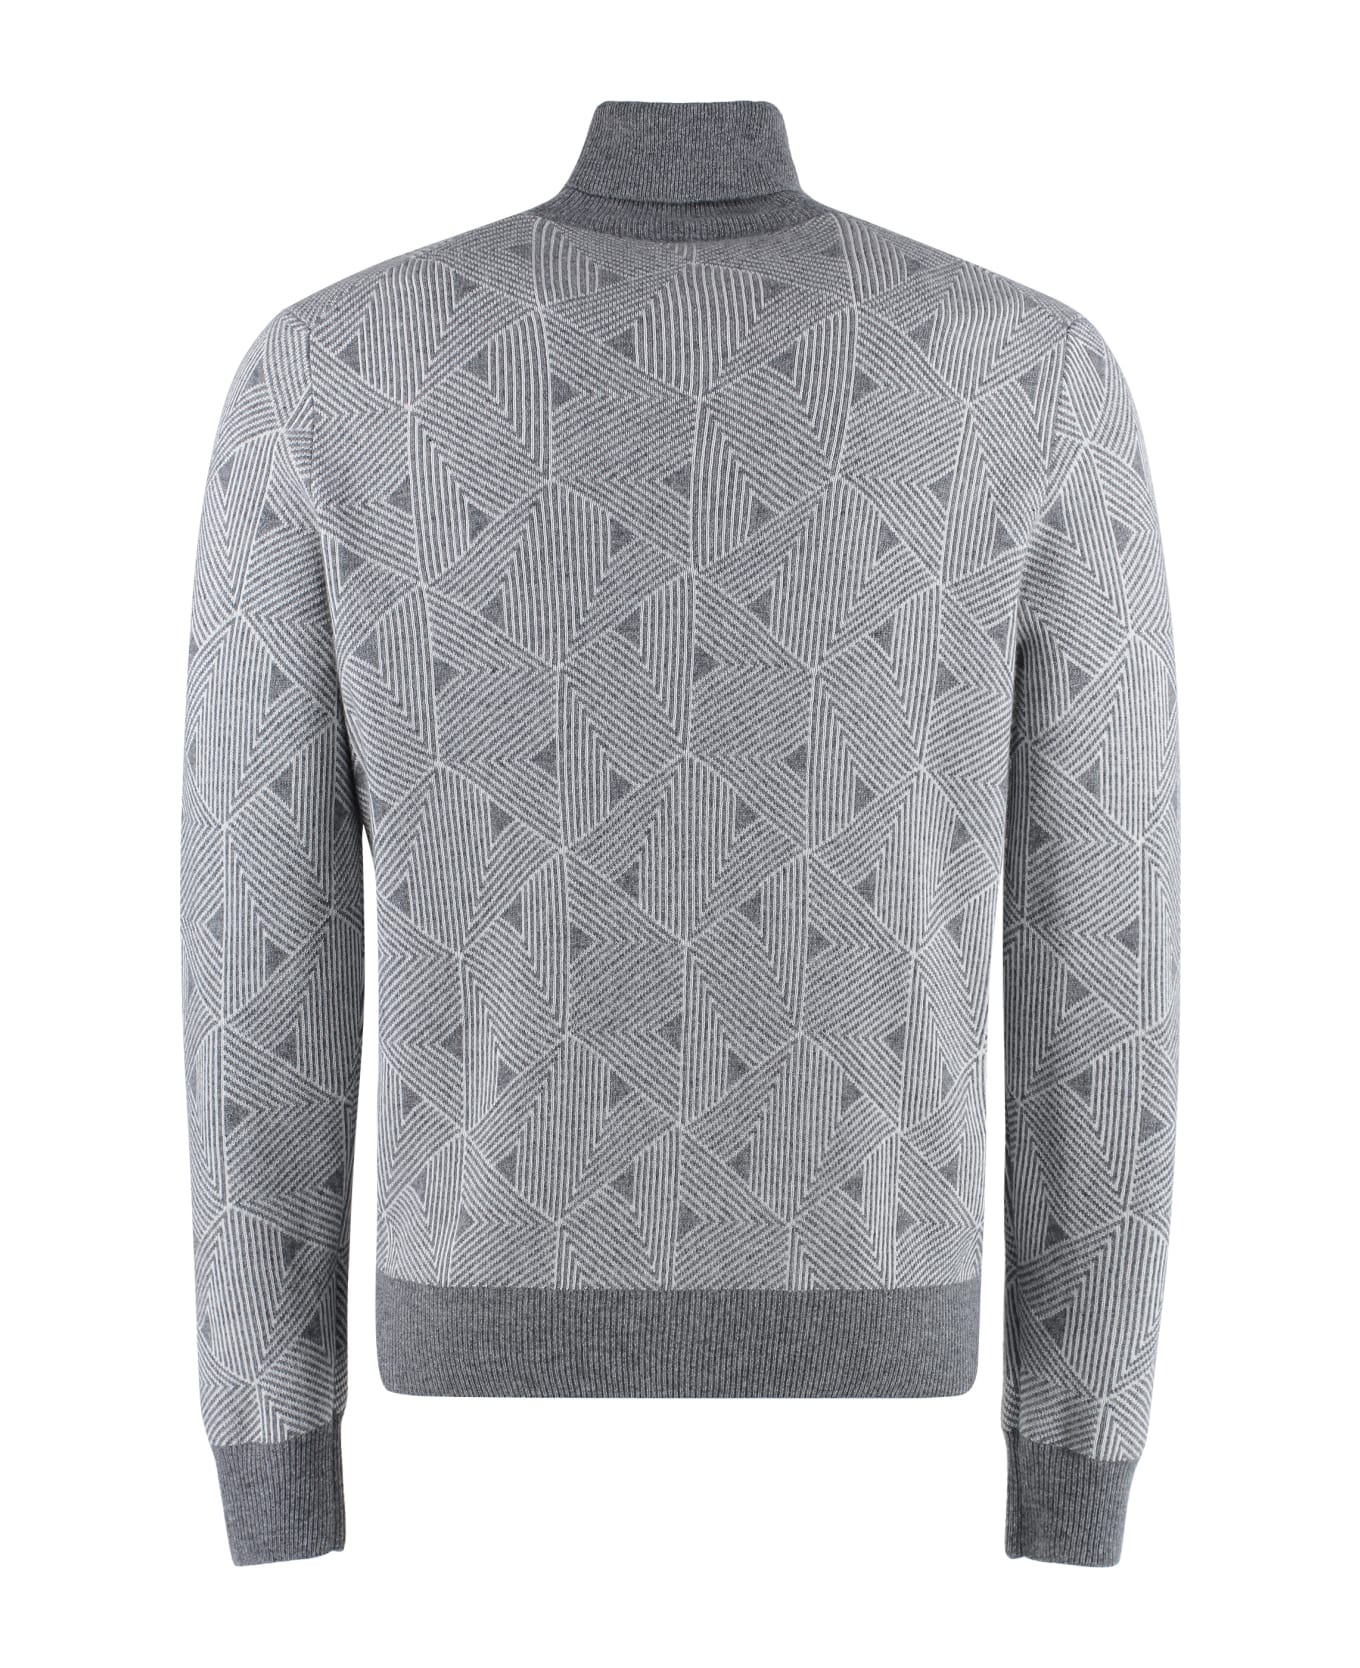 Canali Cashmere Blend Turtleneck Sweater - grey ニットウェア